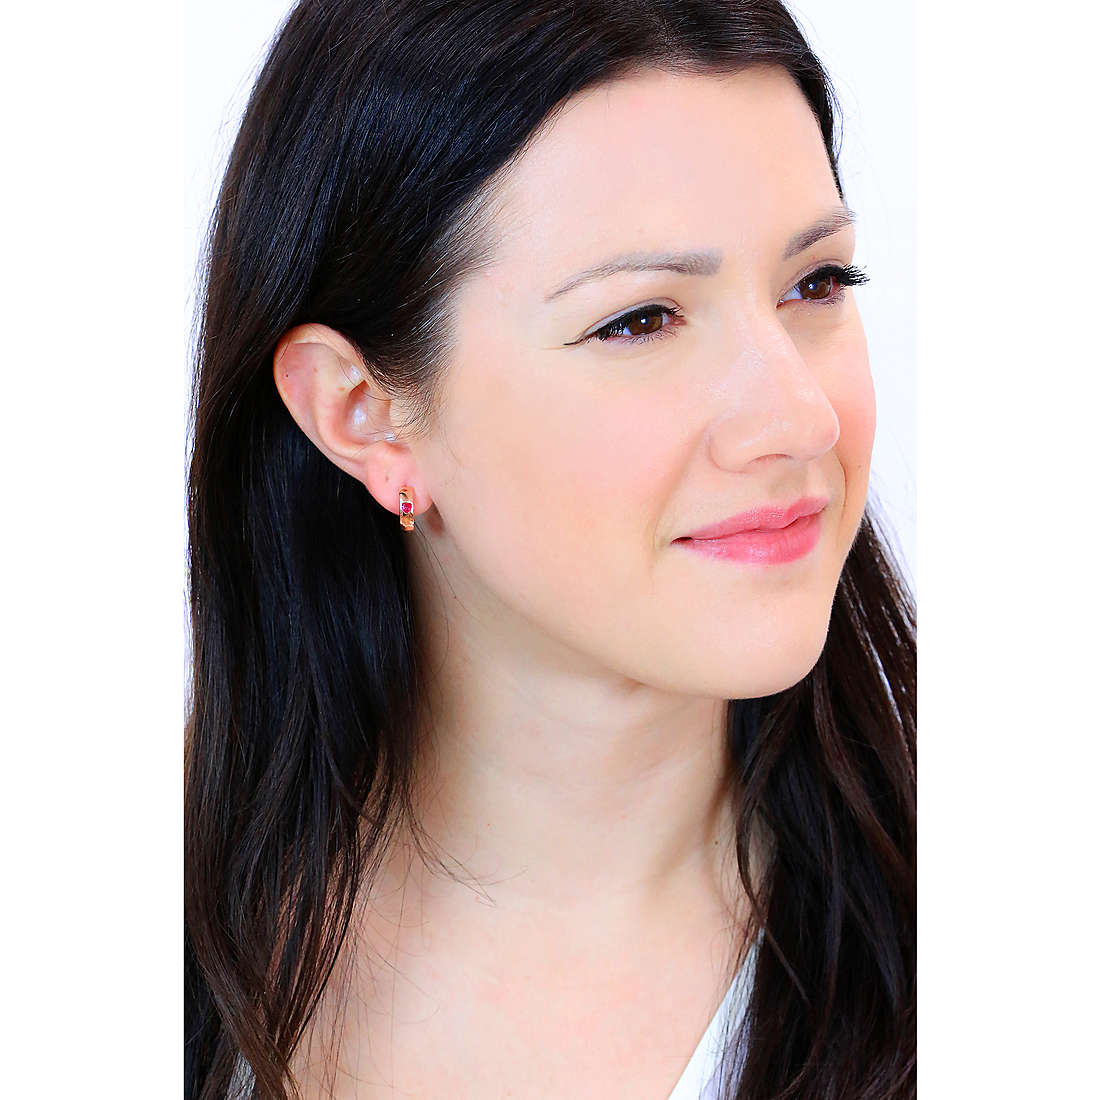 Sovrani earrings Luce woman J7119 wearing